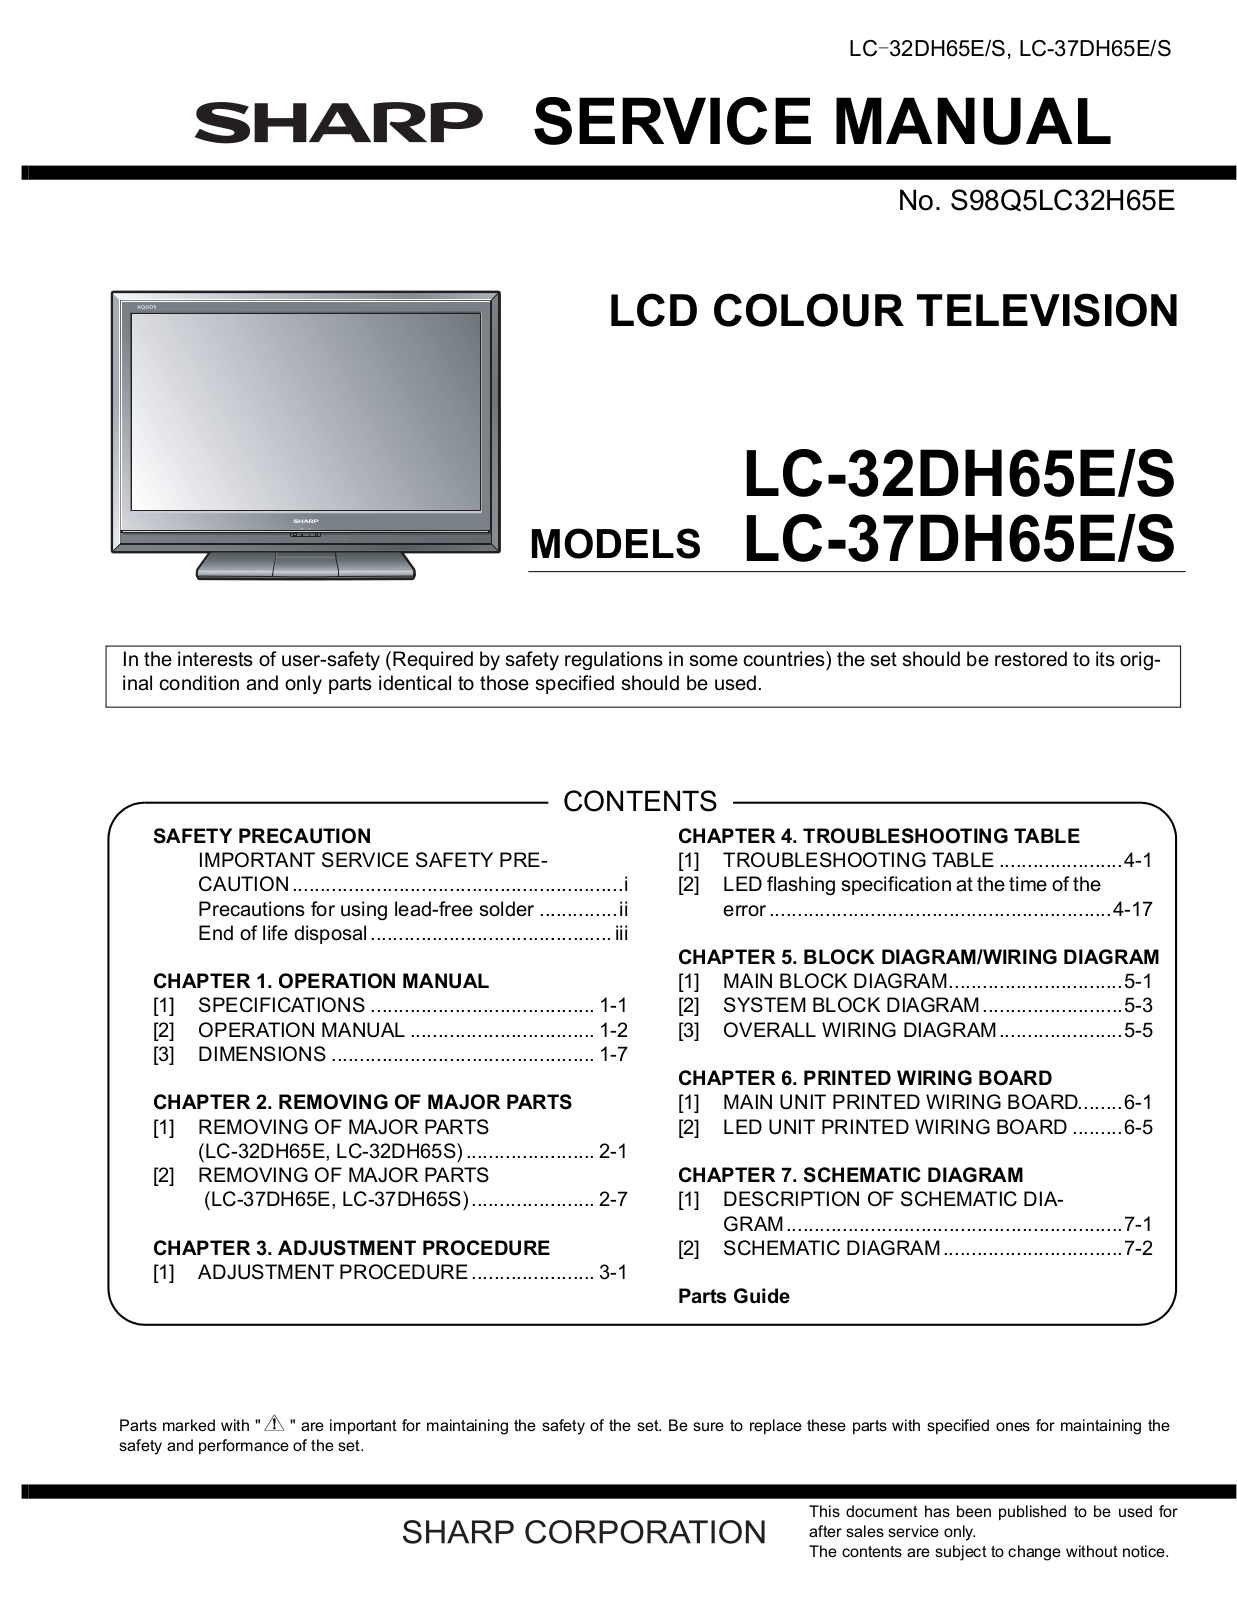 Sharp LC-32DH65, LC-37DH65 Service manual